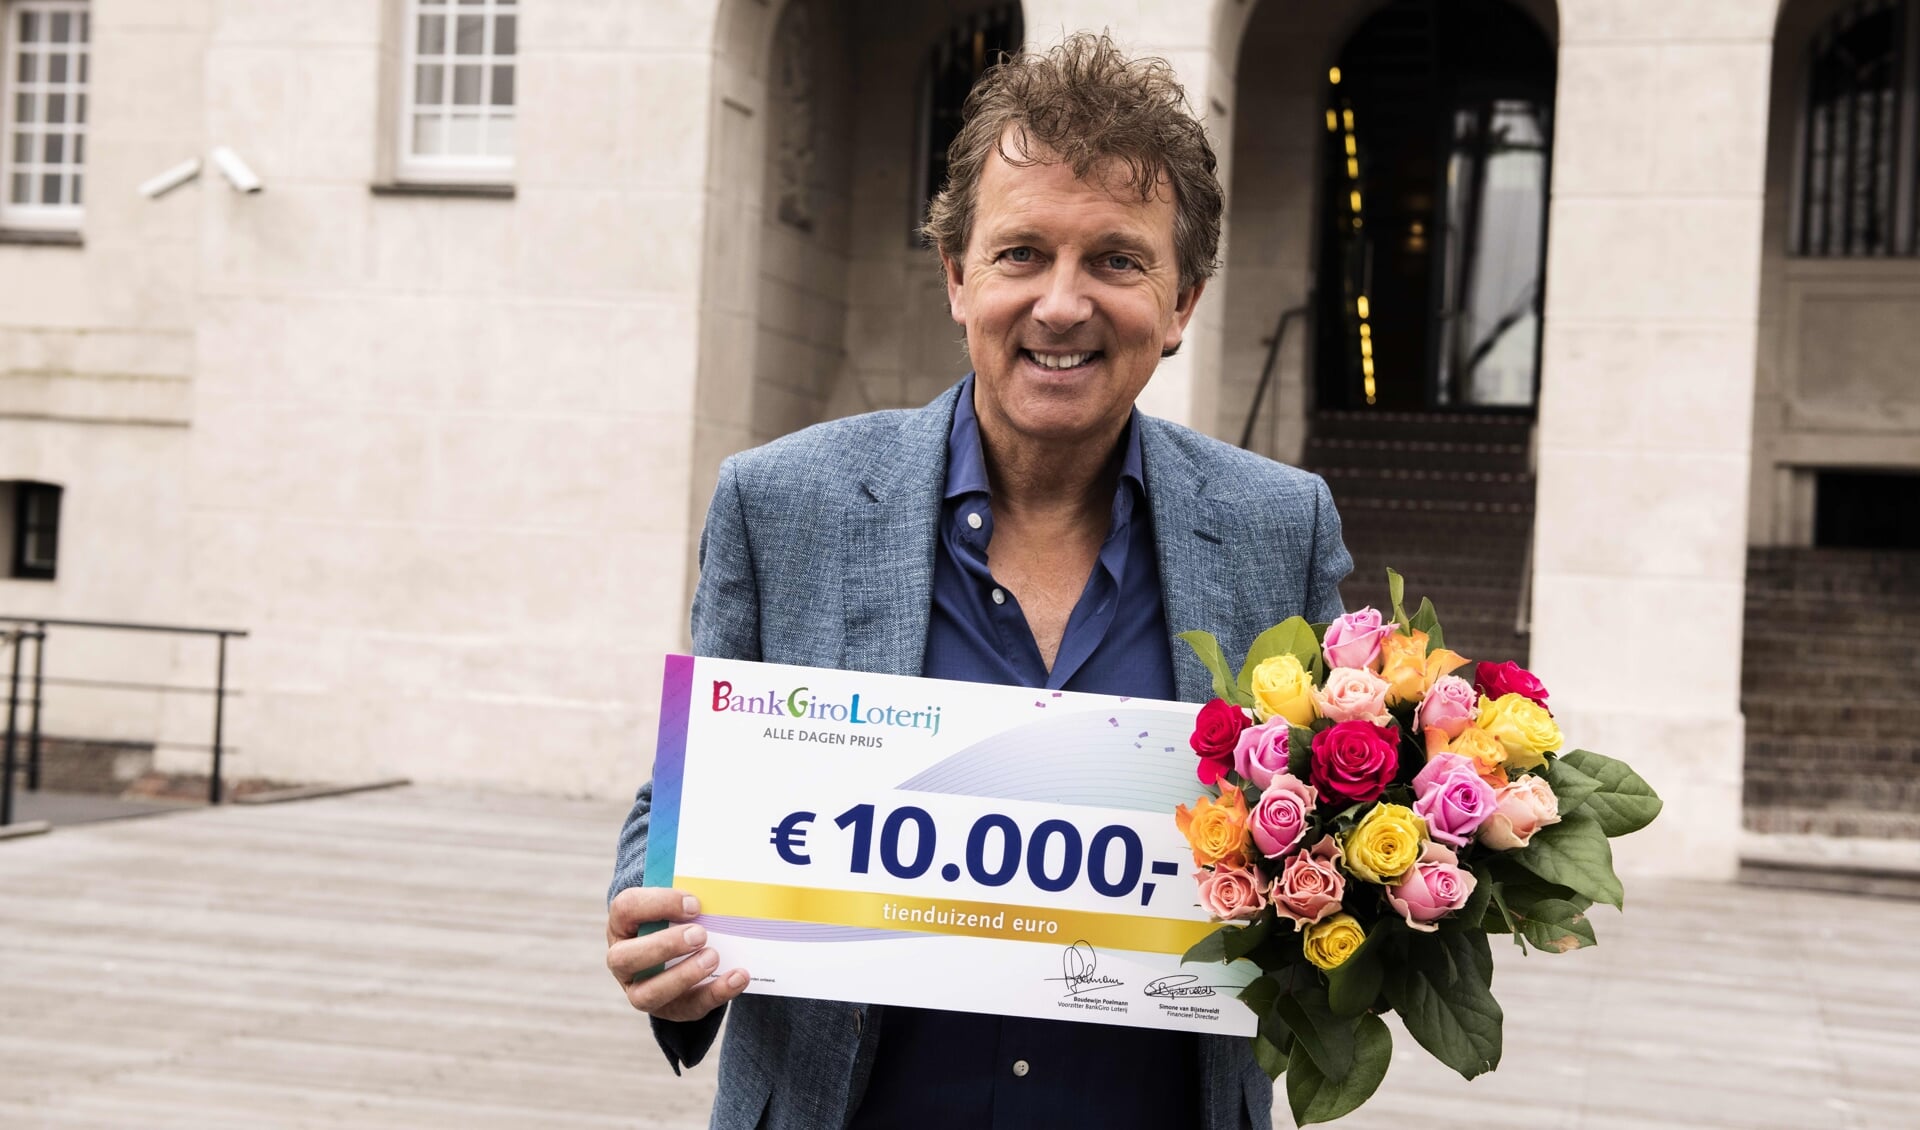 BankGiro Loterij-ambassadeur Robert ten Brink met een cheque